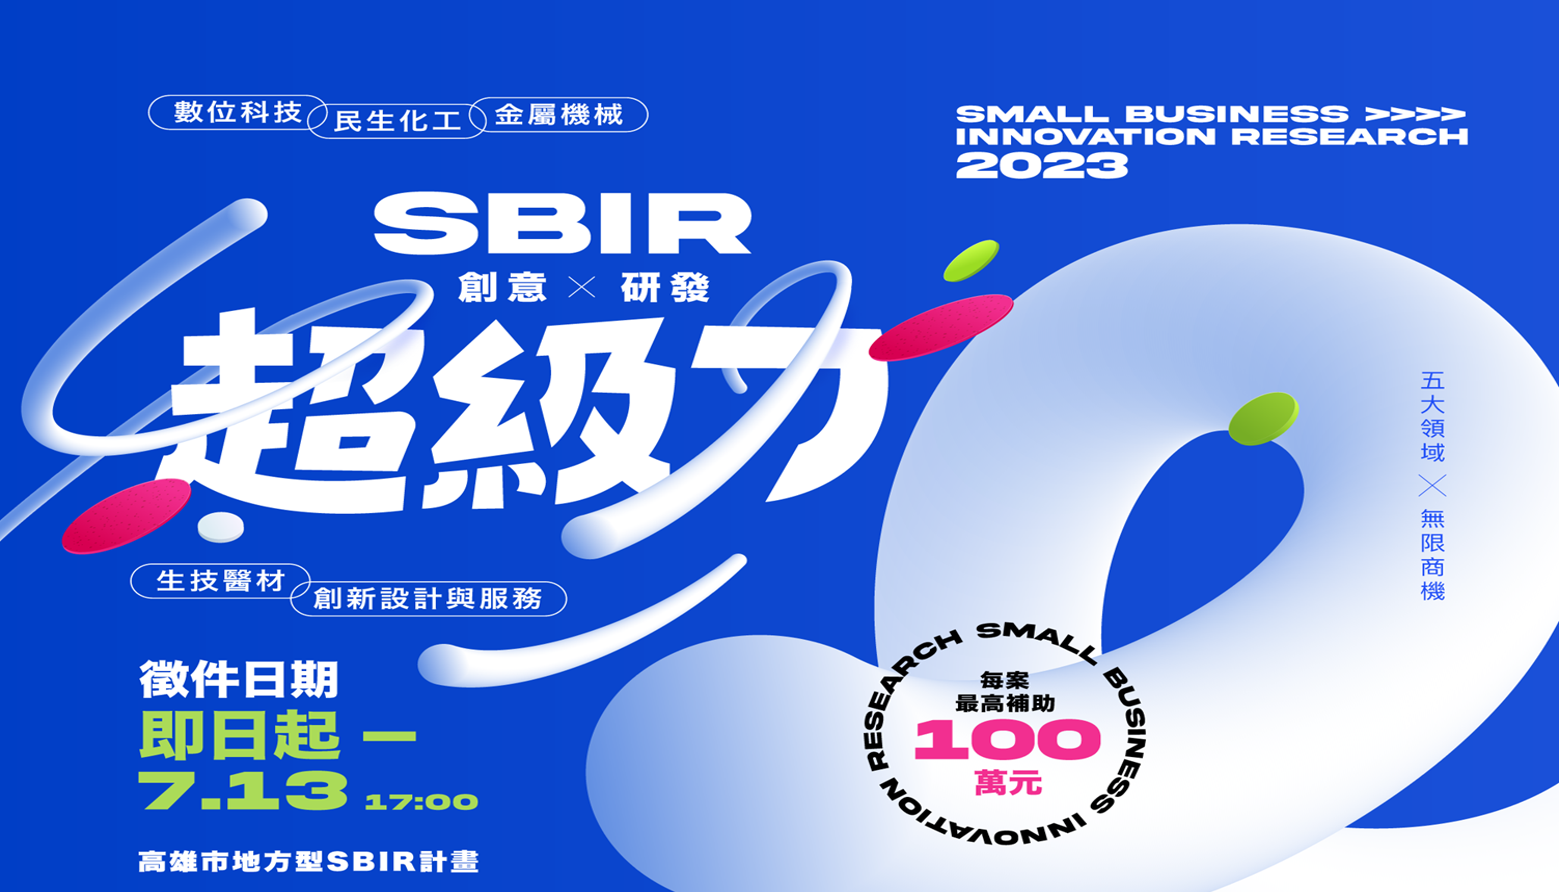 高雄市112年度地方產業創新研發推動計畫(SBIR)